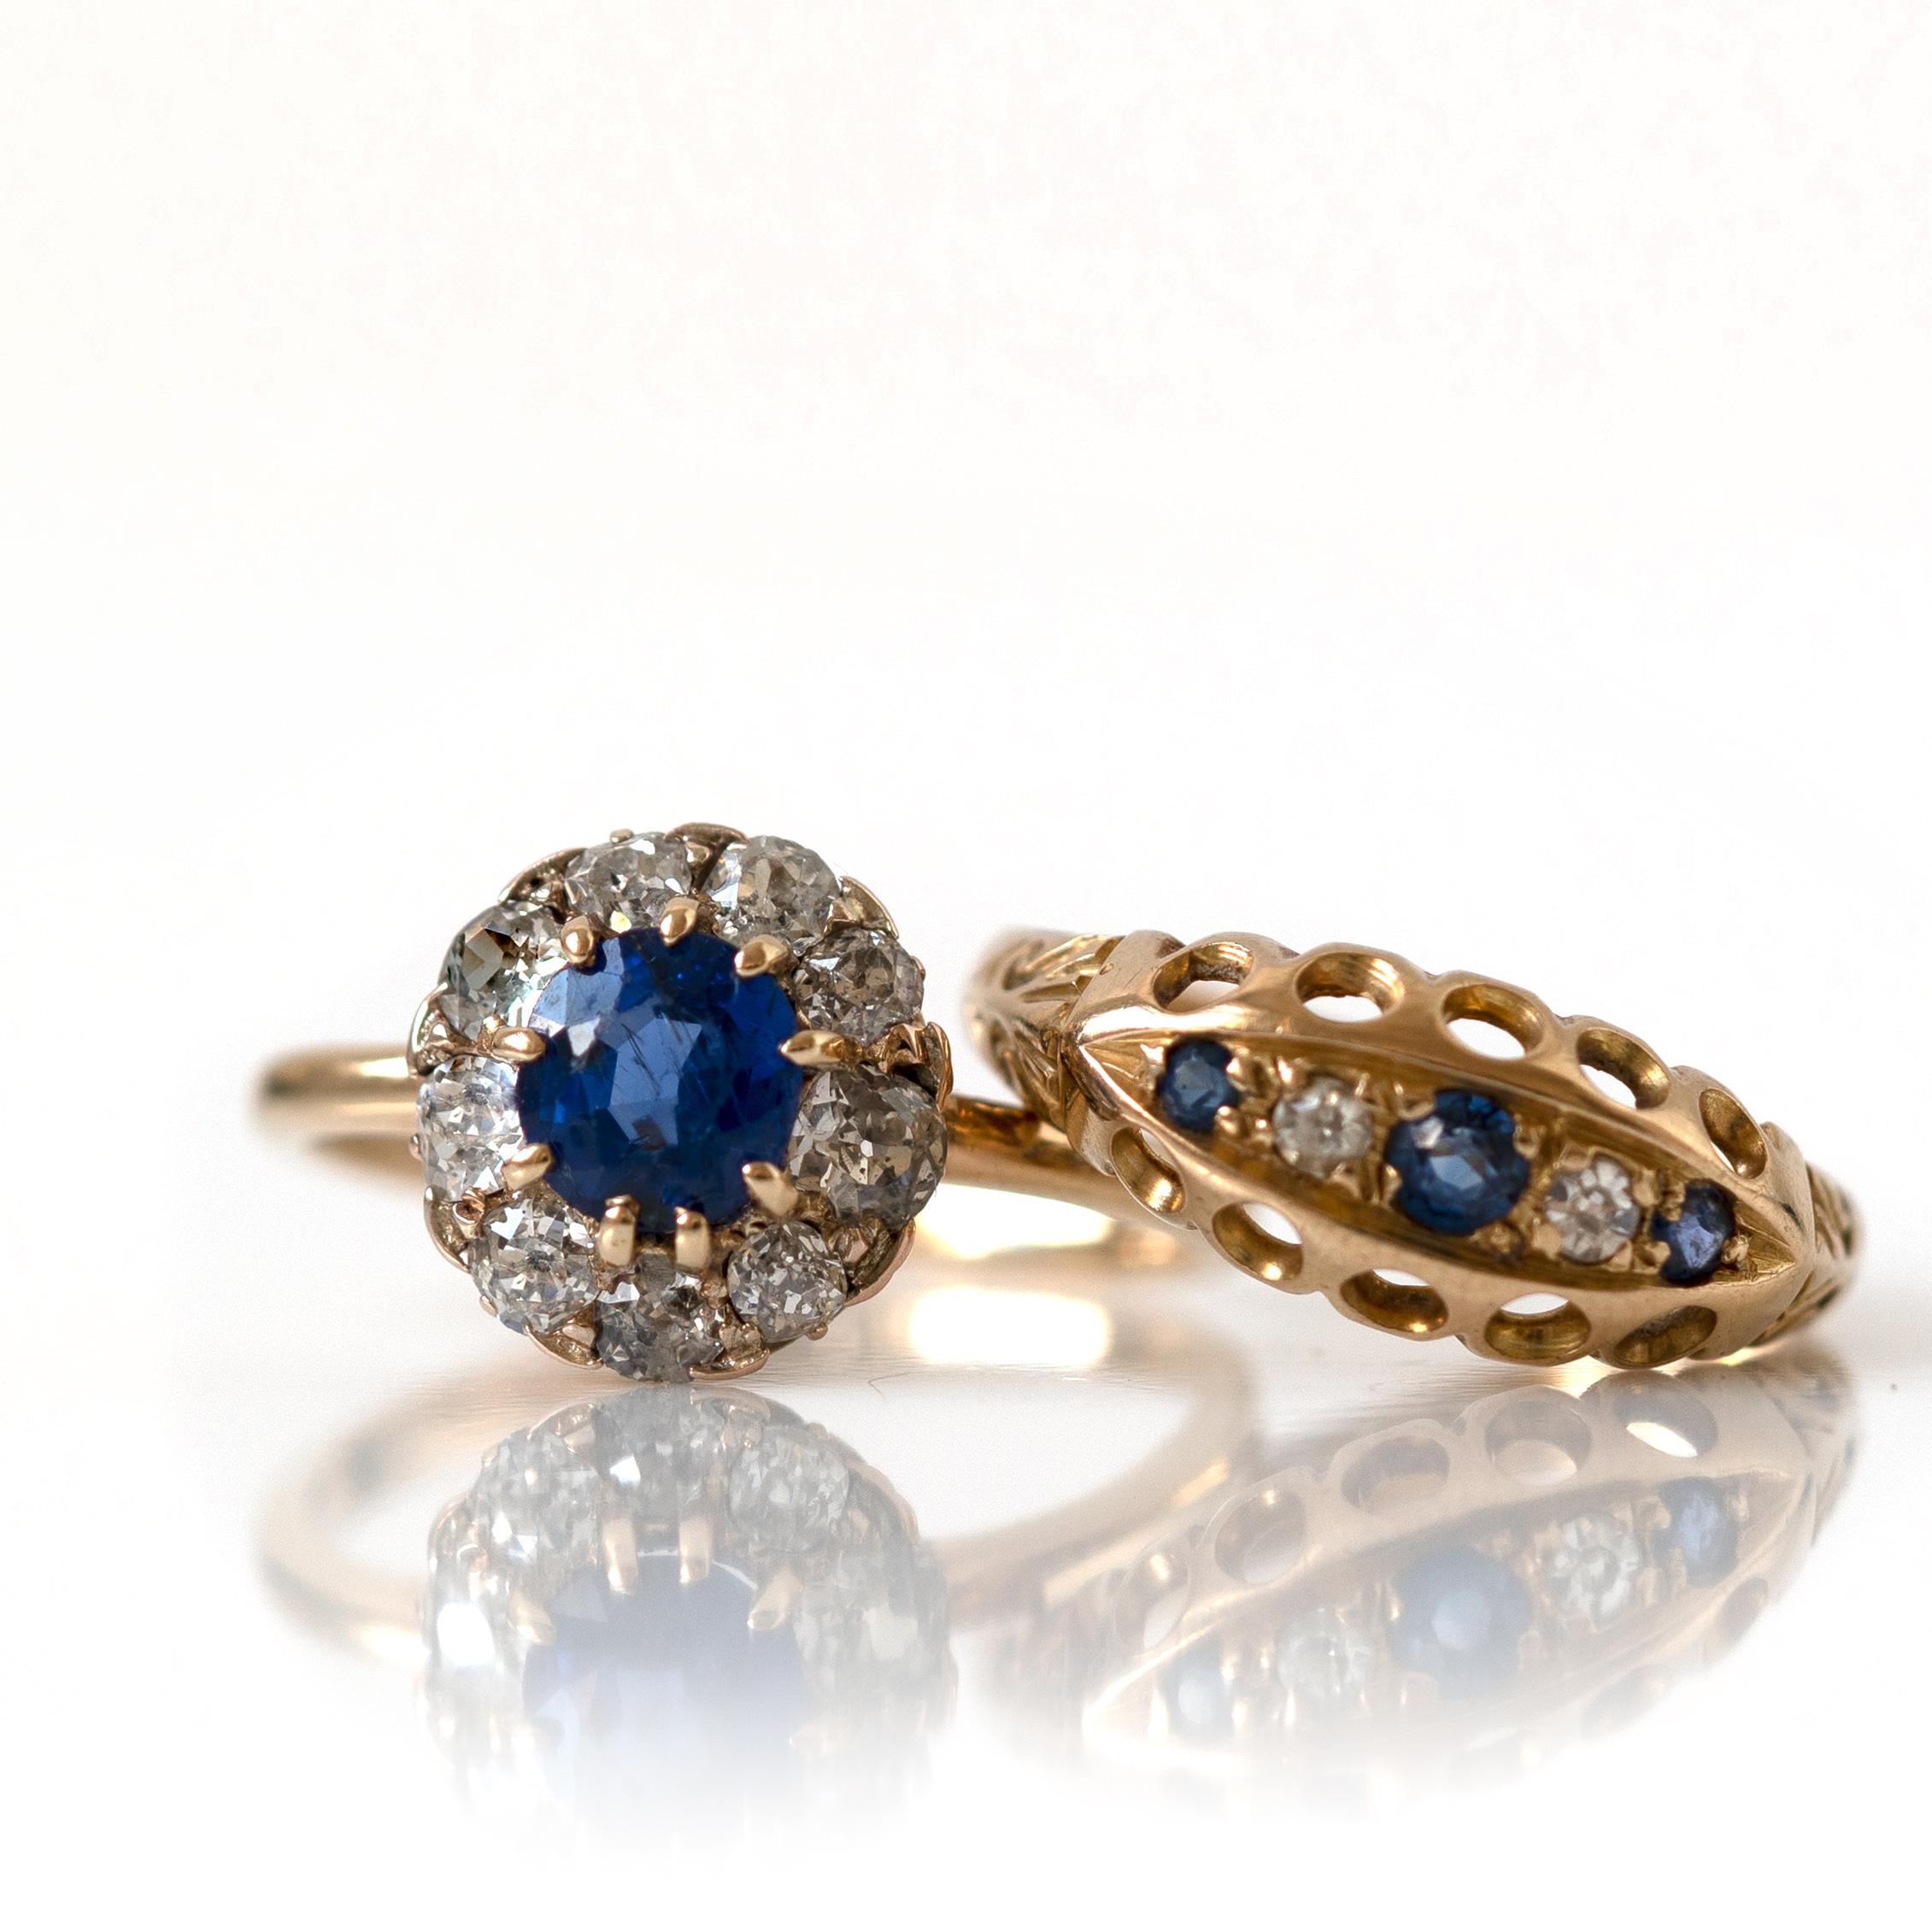 Antiker Ring aus 18 Karat Gold von 1914 mit drei strahlend blauen Saphiren und zwei strahlend weißen Diamanten in einer ausgeschnittenen Spitzenfassung. Dieses Stück wurde 1914 in Birmingham gestempelt.

HALLMARKS
18, Anker, Buchstabe -